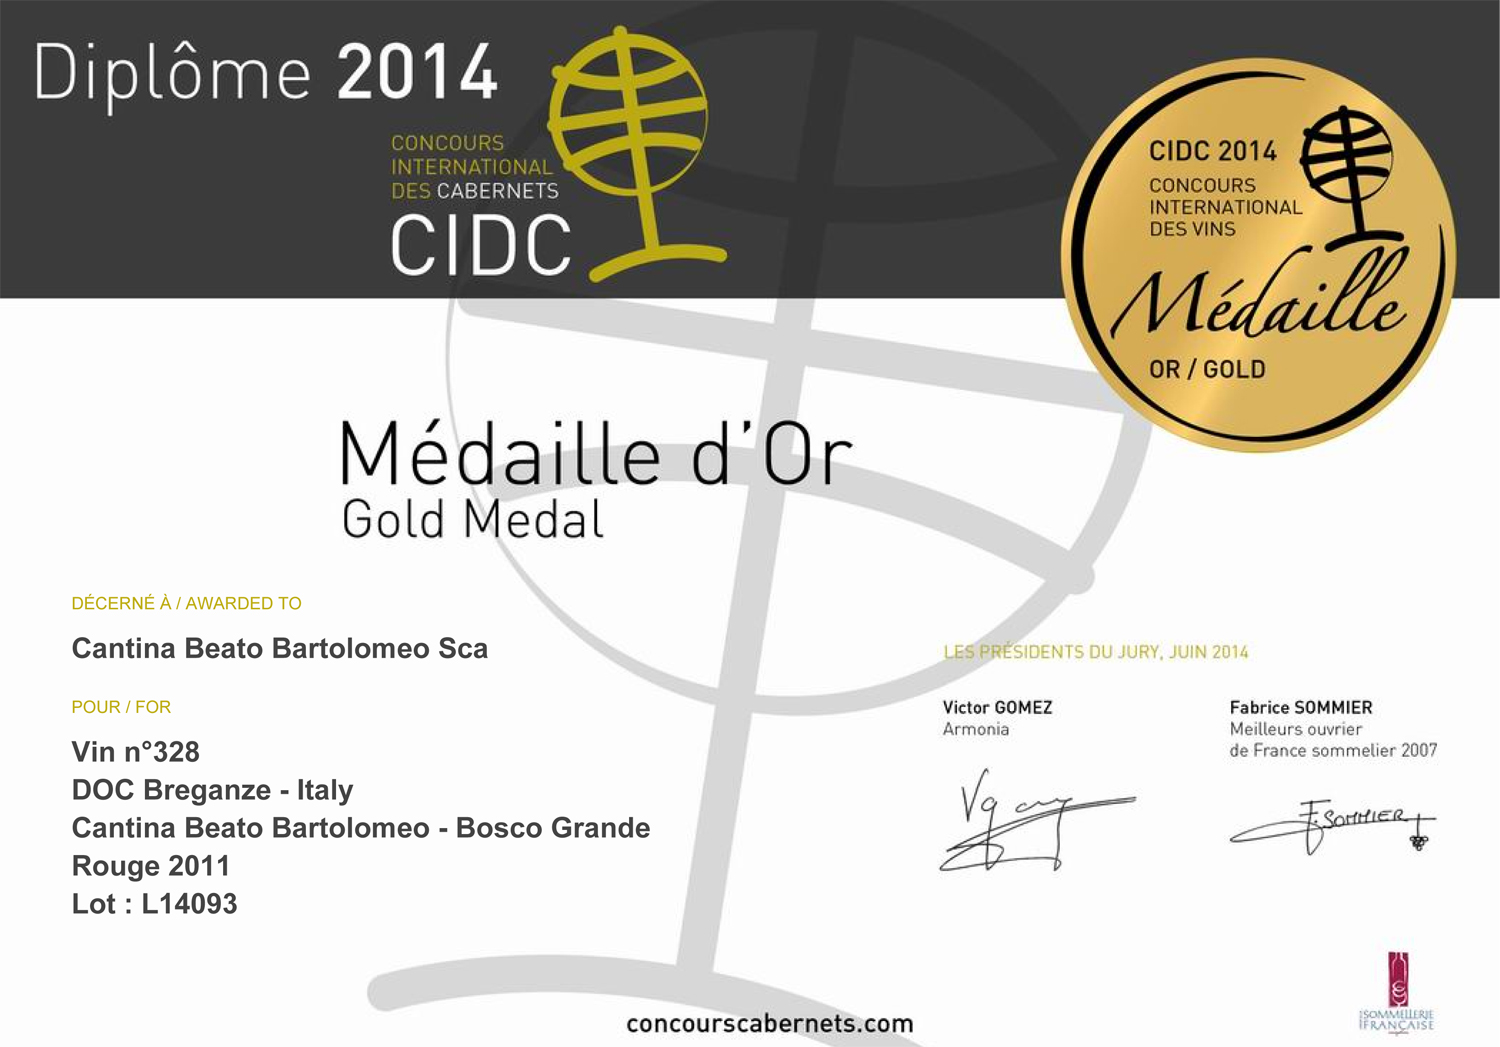 CIDC Concours International Des Cabernets